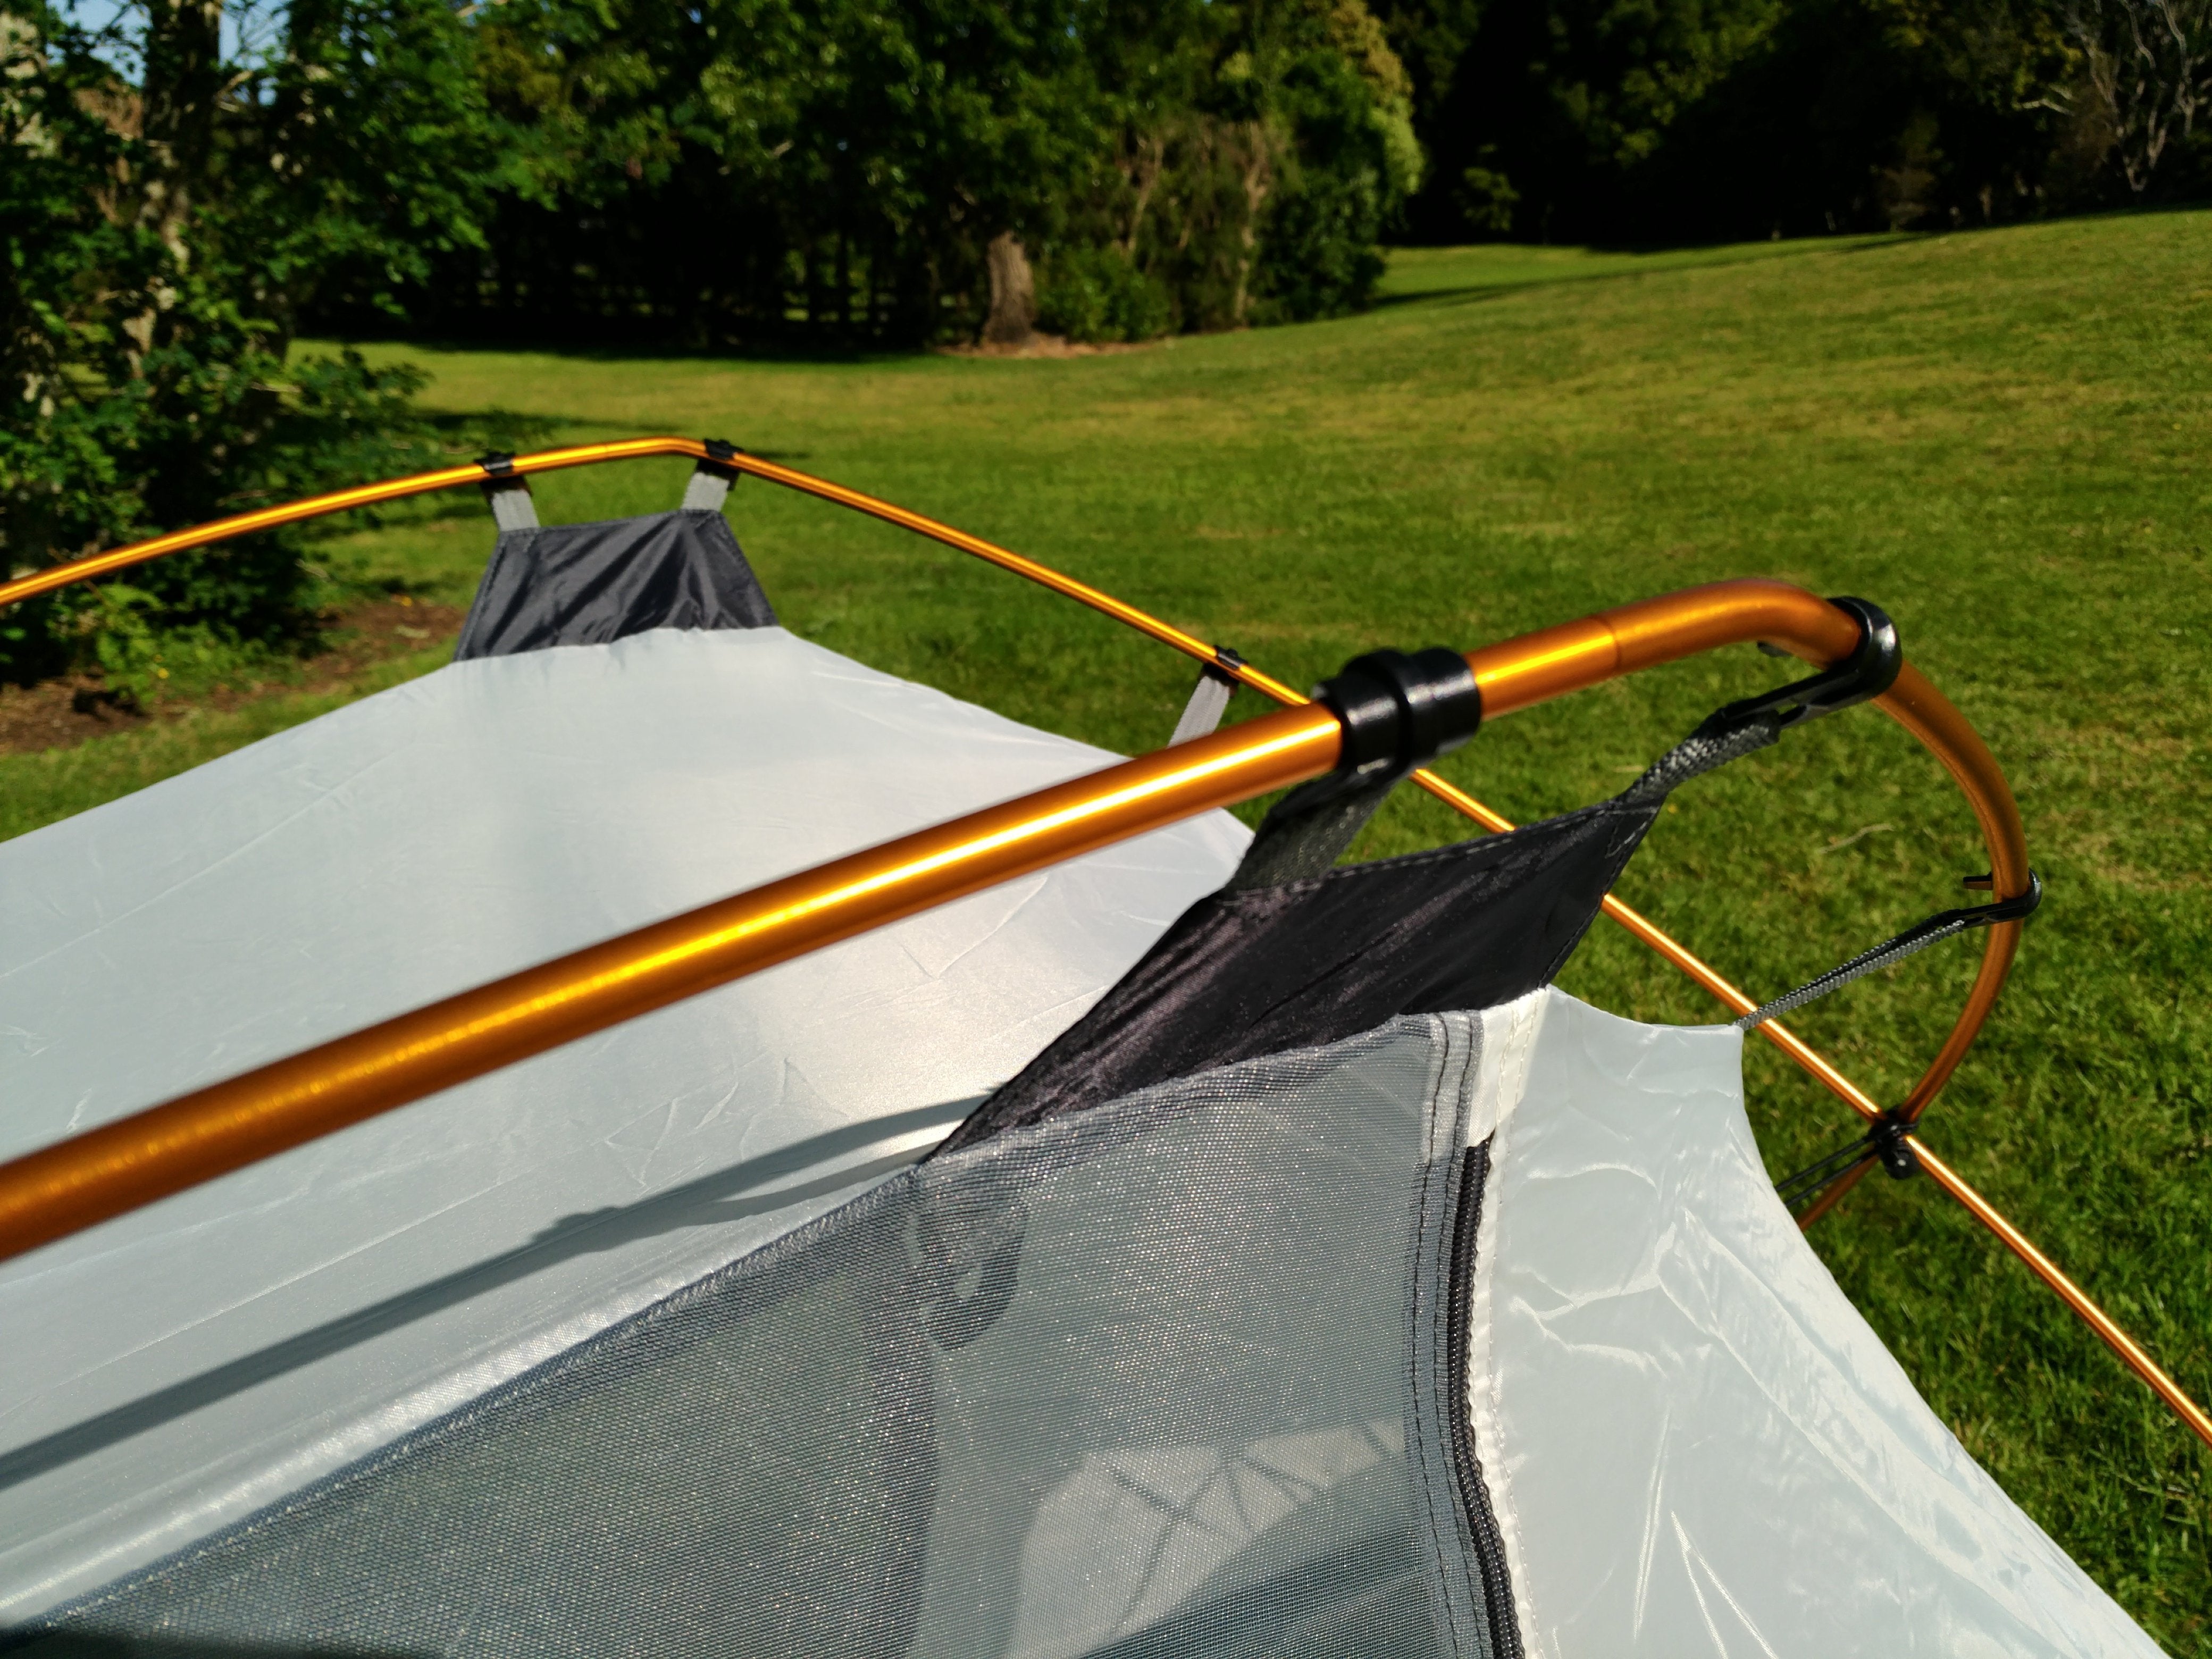 Tent poles and materials